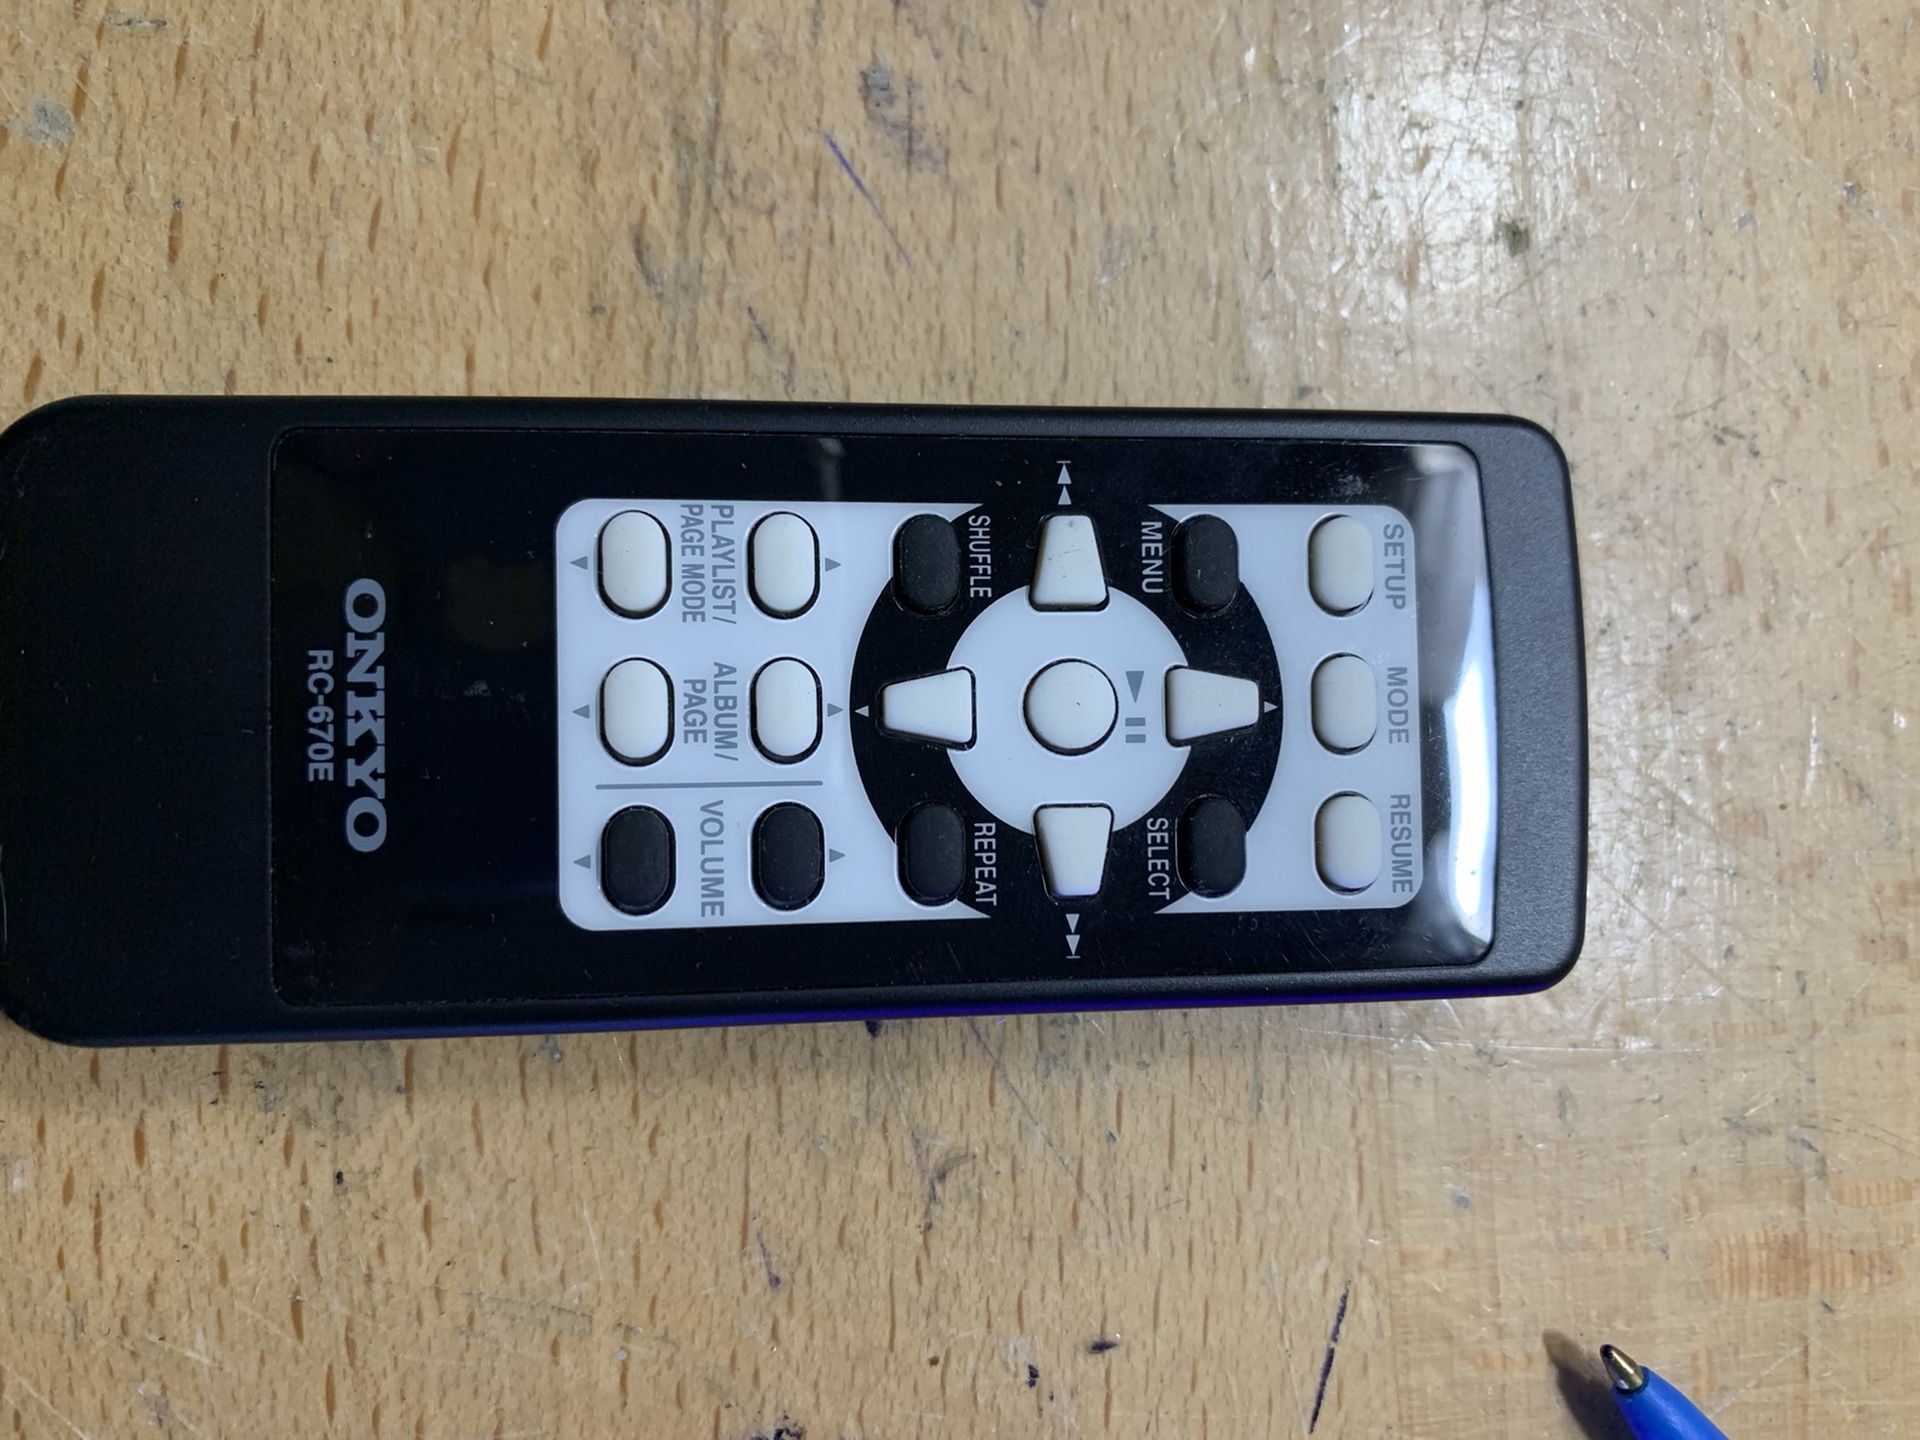 Onkyo remote control